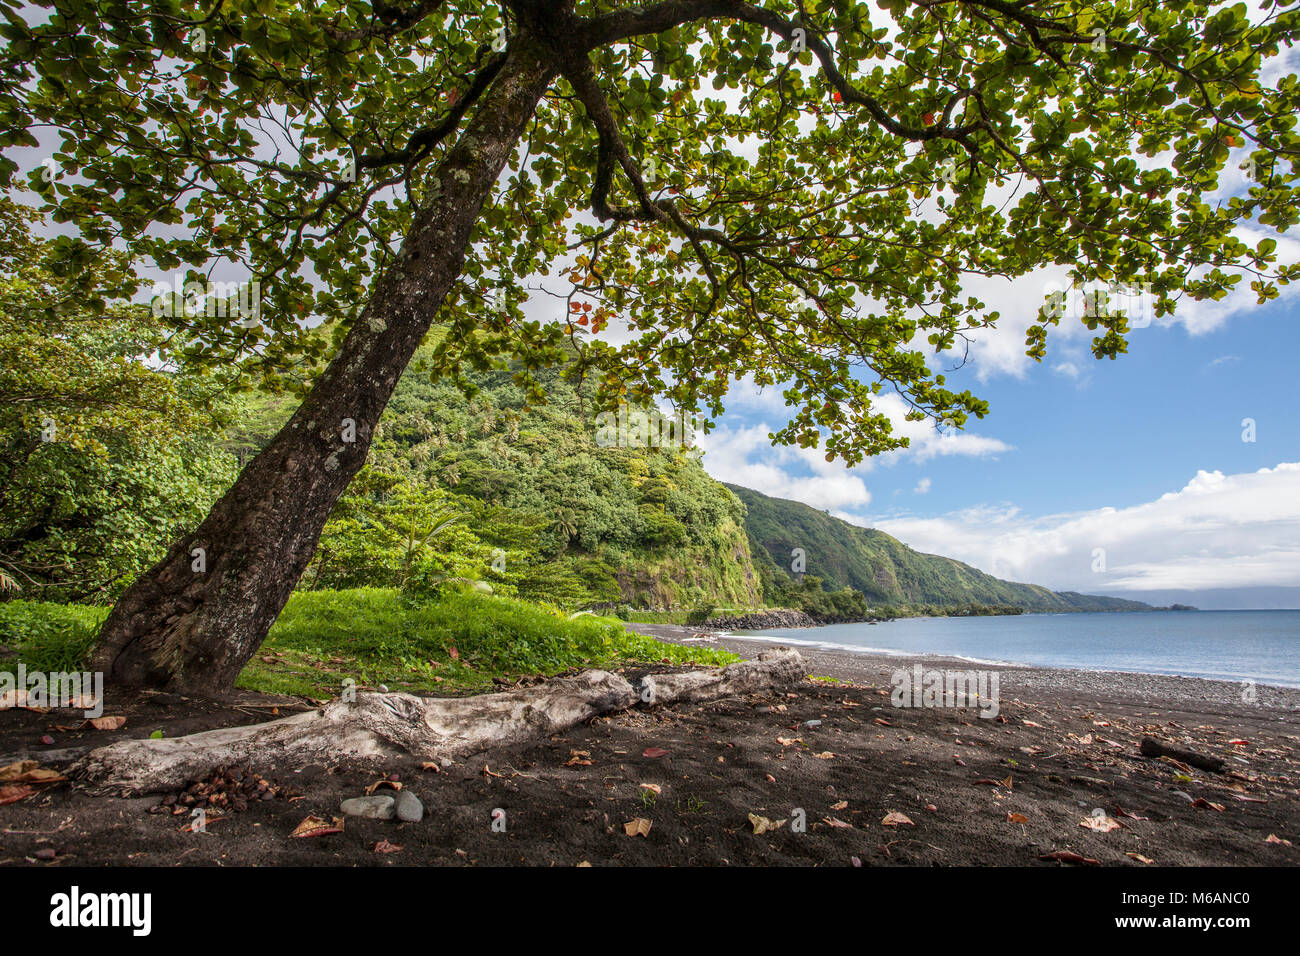 Big tree, beach, coastal landscape, Tahiti, French Polynesia Stock Photo